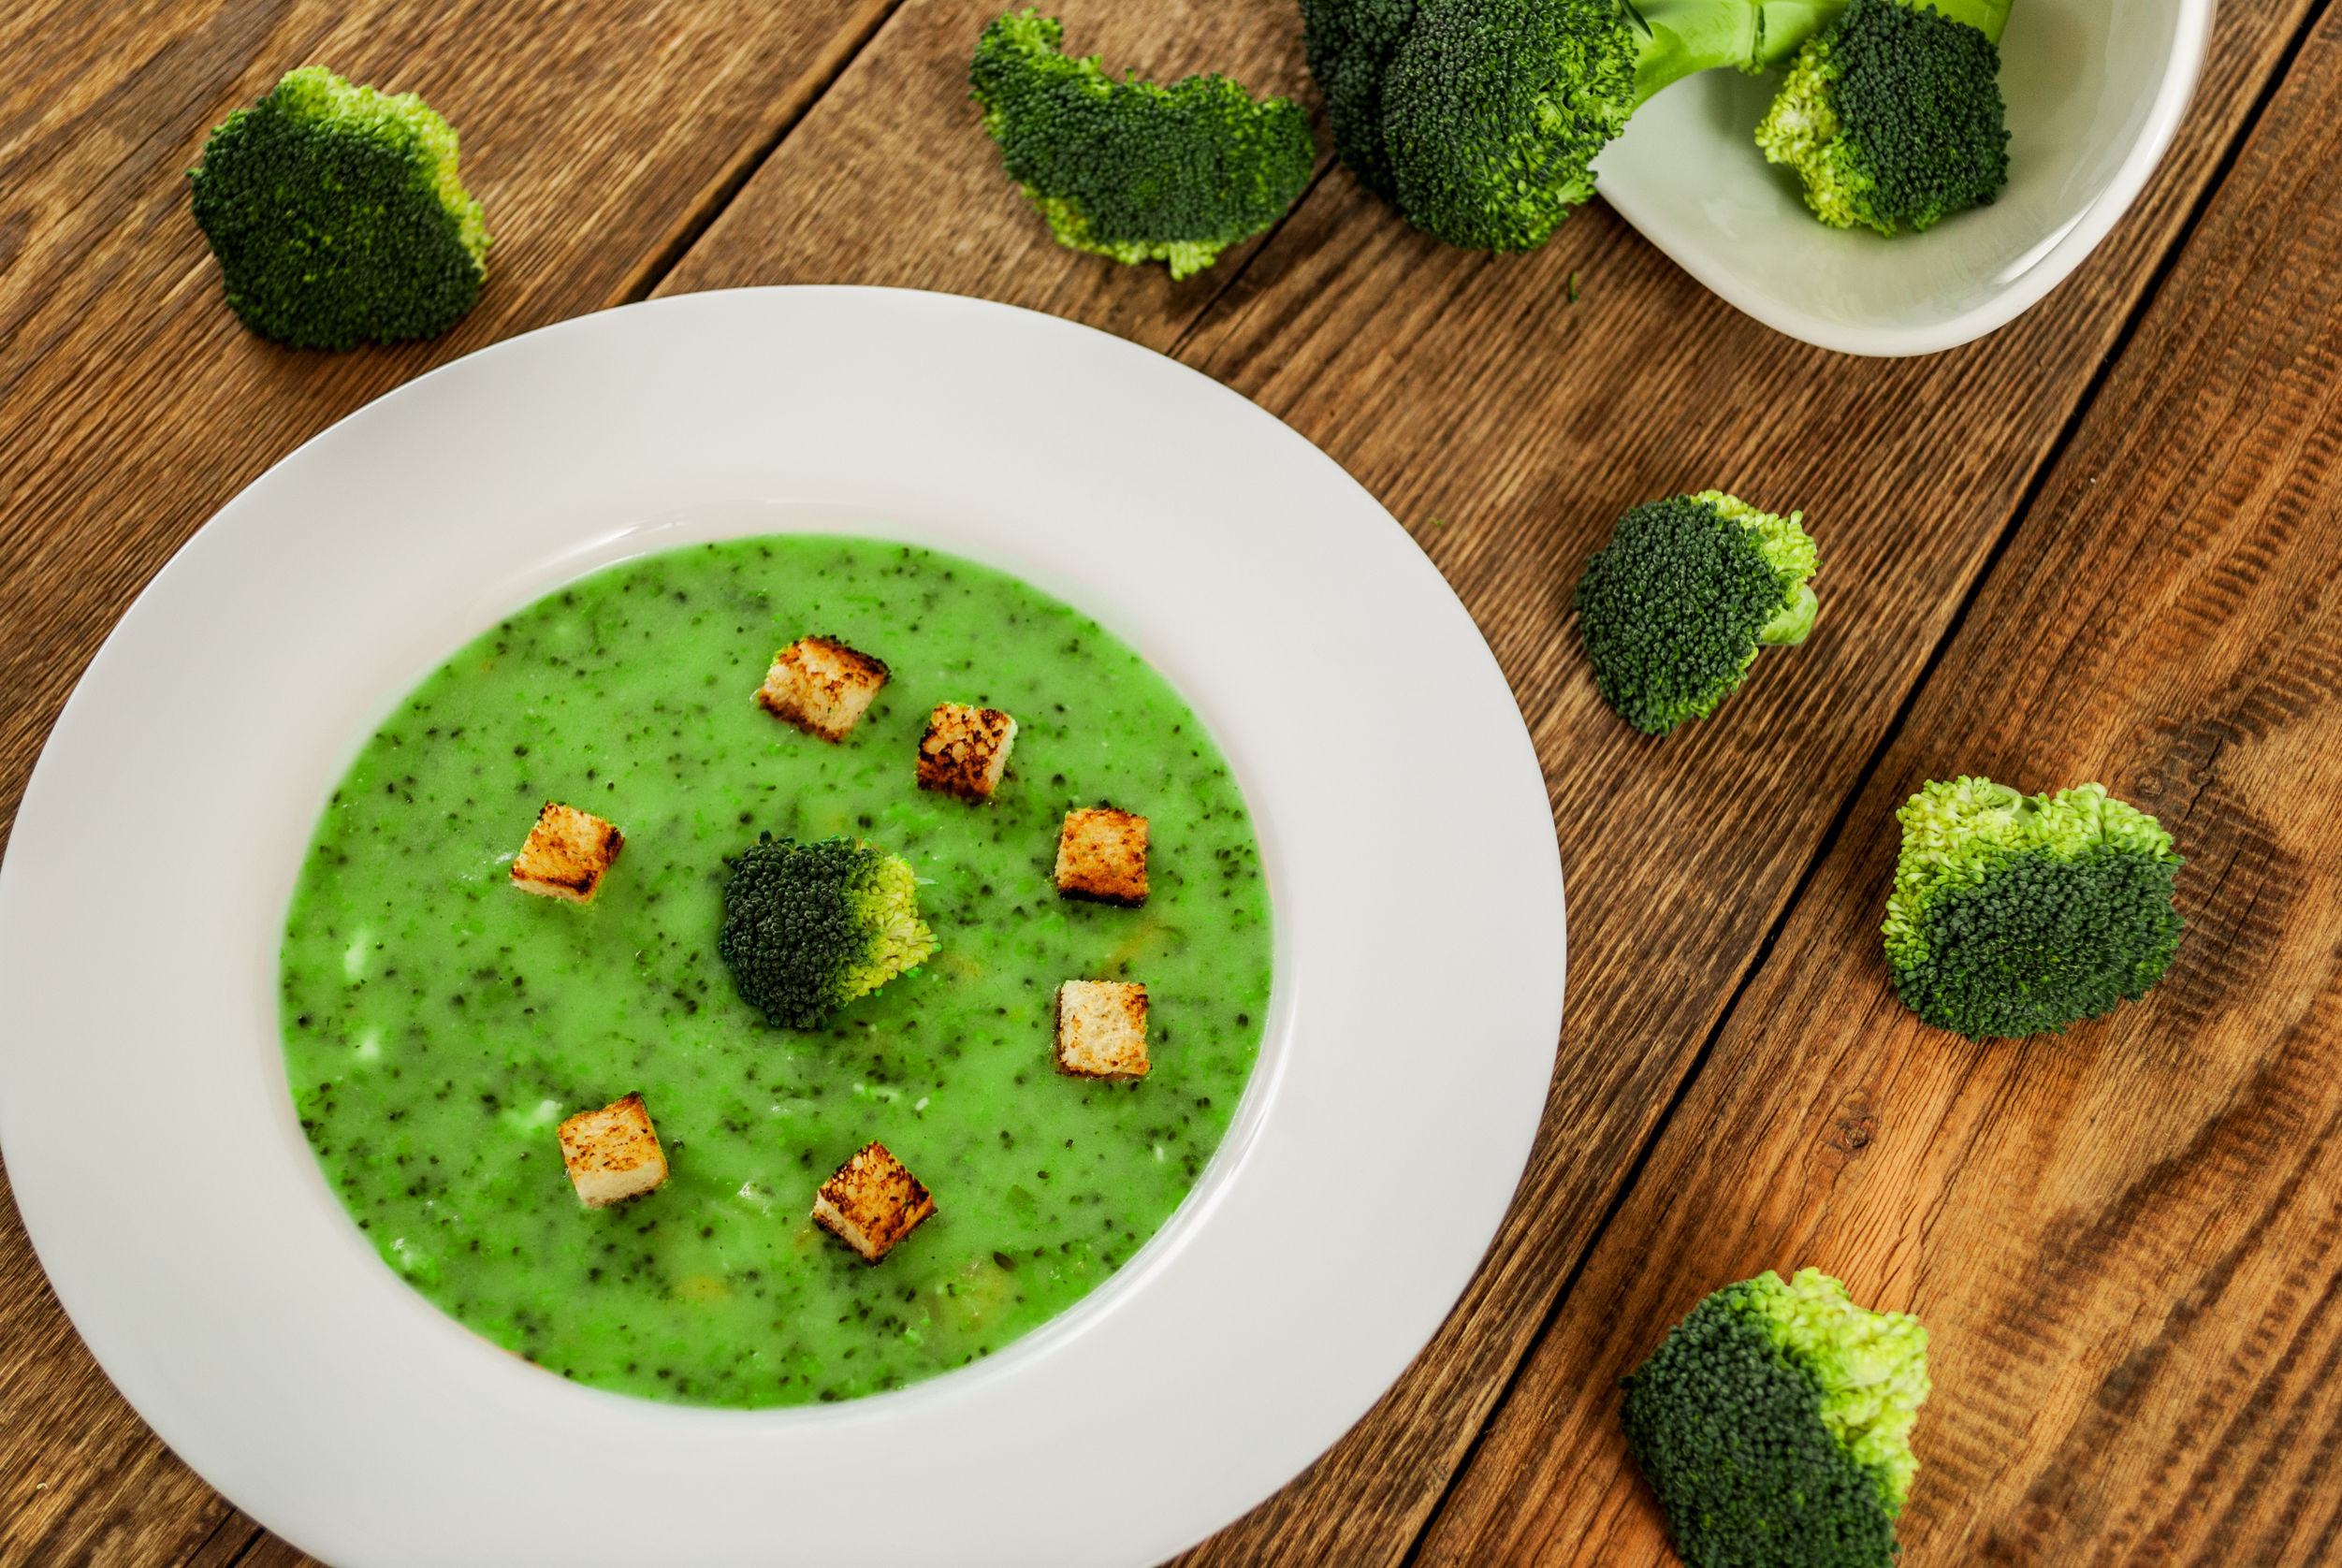 Supă cremă de broccoli cu brânză albastră şi crutoane aromate cu ulei din seminţe de roşii